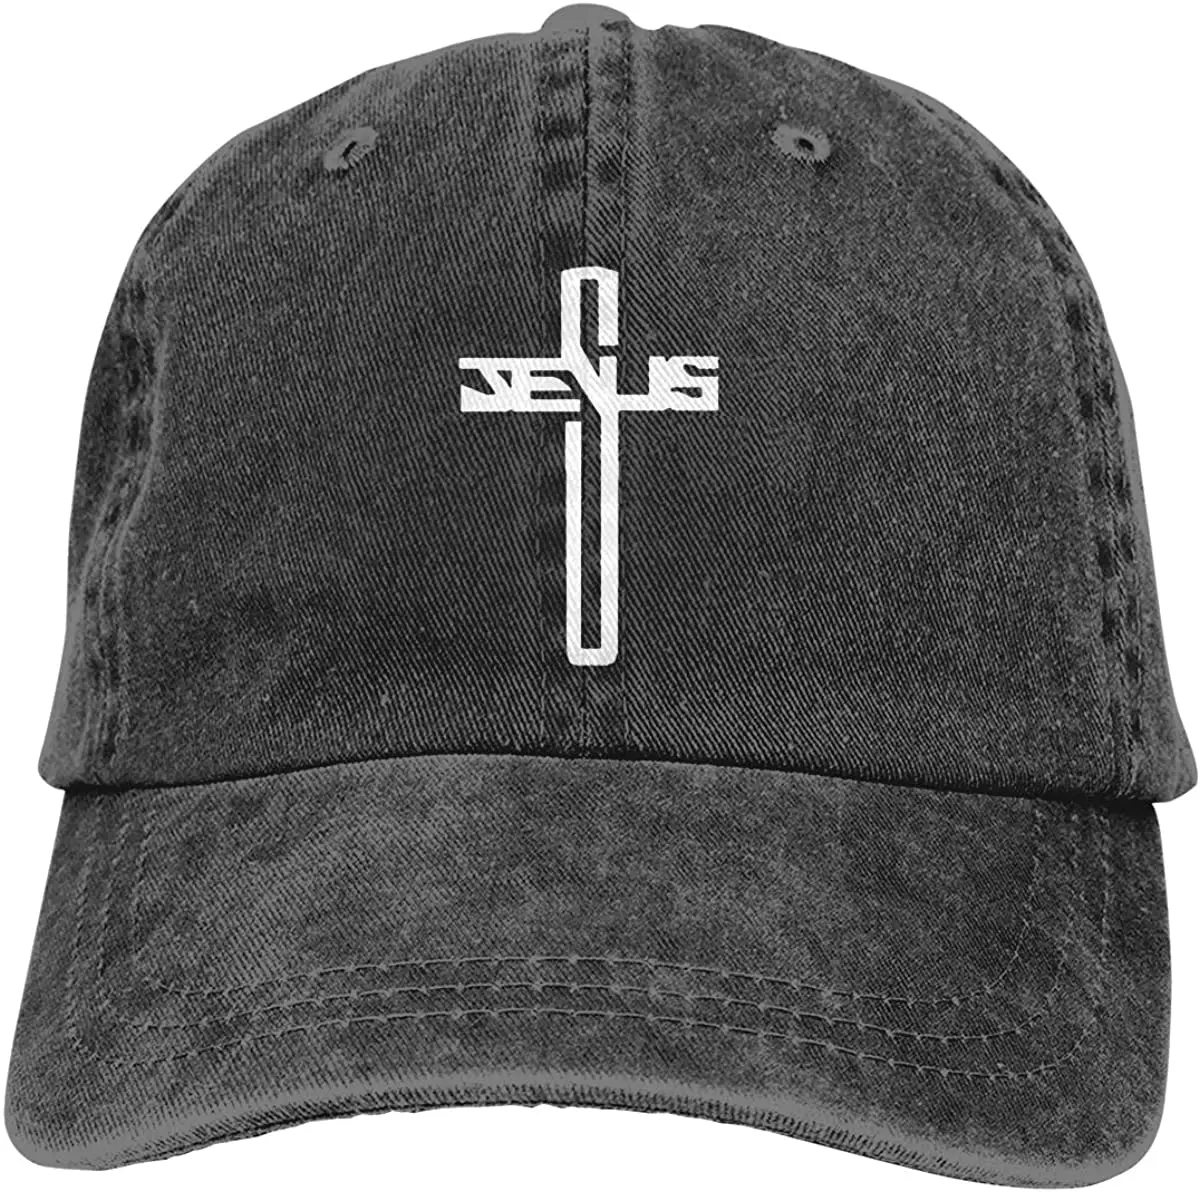 

Men's & Women's Christian Jesus Cross Baseball Cap Vintage Washed Adjustable Funny Dad Hat